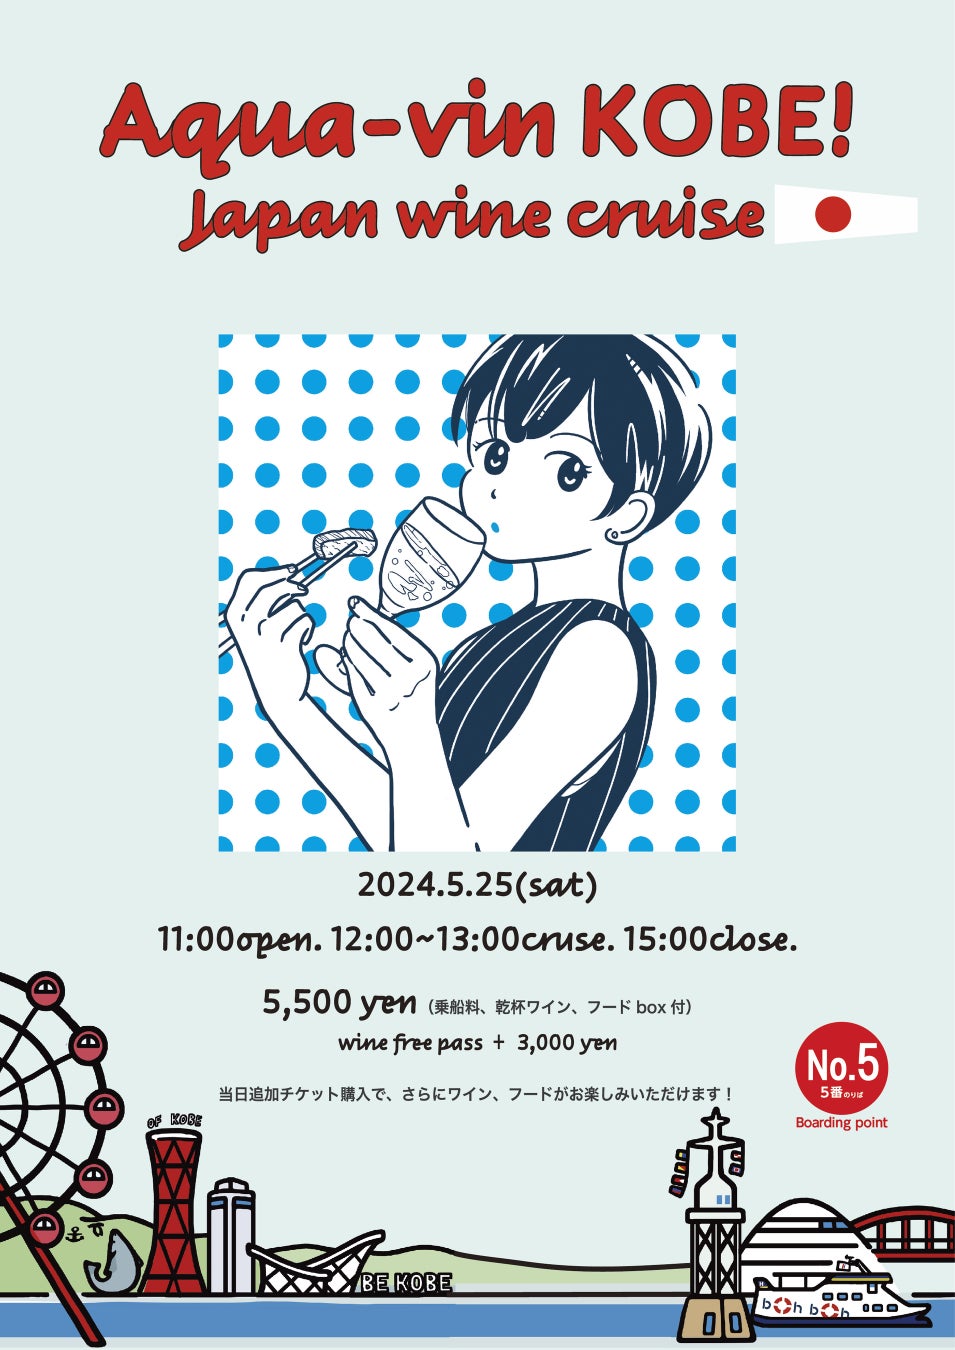 【Aqua-vin KOBE！Japan wine cruise】boh boh KOBE船上で50種類を超えるワインが集まる！極上な日本ワインクルーズをお楽しみ！